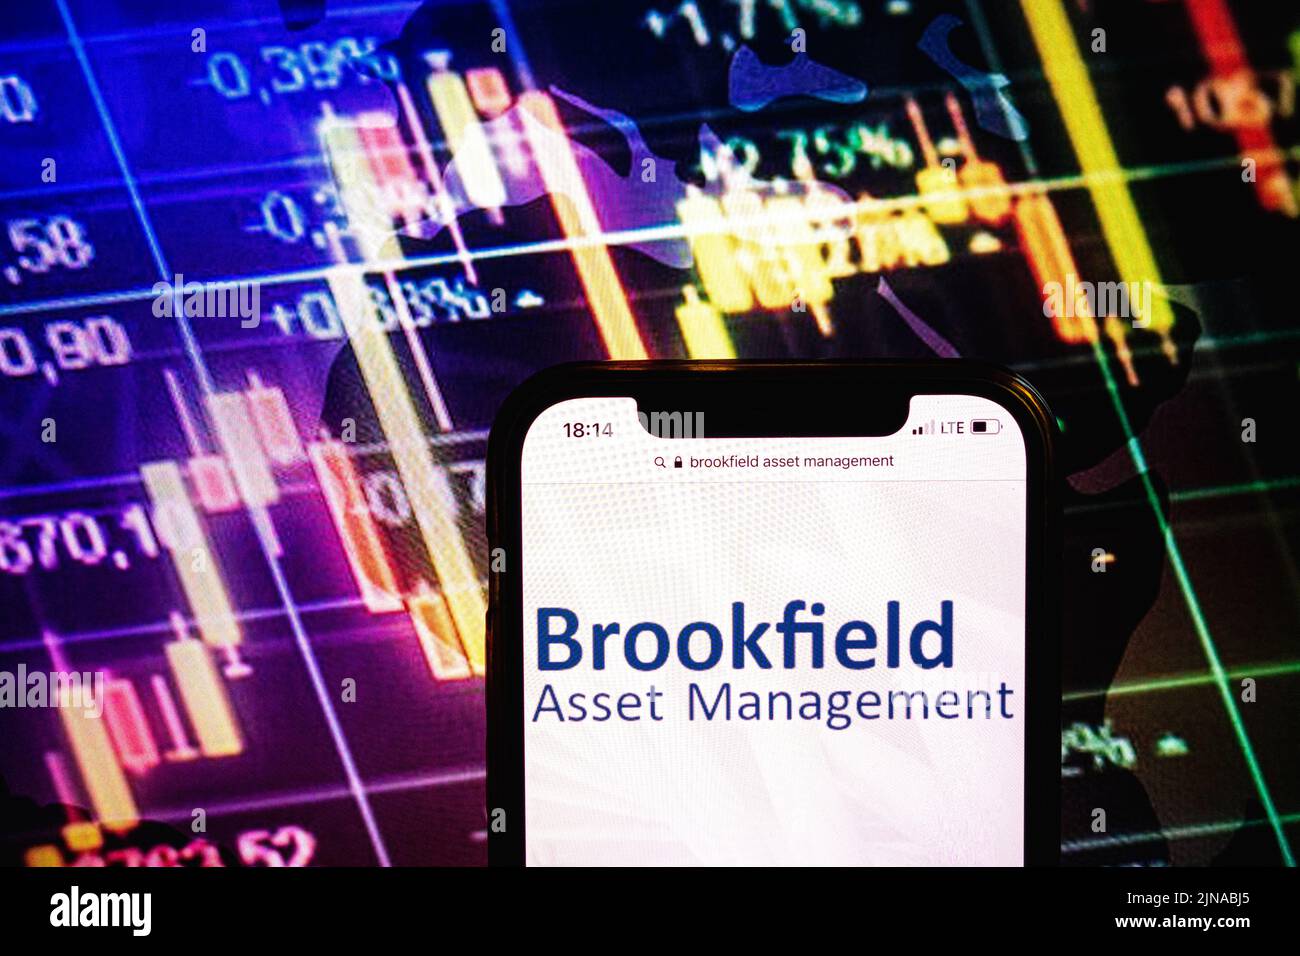 KONSKIE, POLONIA - 09 agosto 2022: Smartphone che mostra il logo della società Brookfield Asset Management sullo sfondo del diagramma di borsa Foto Stock